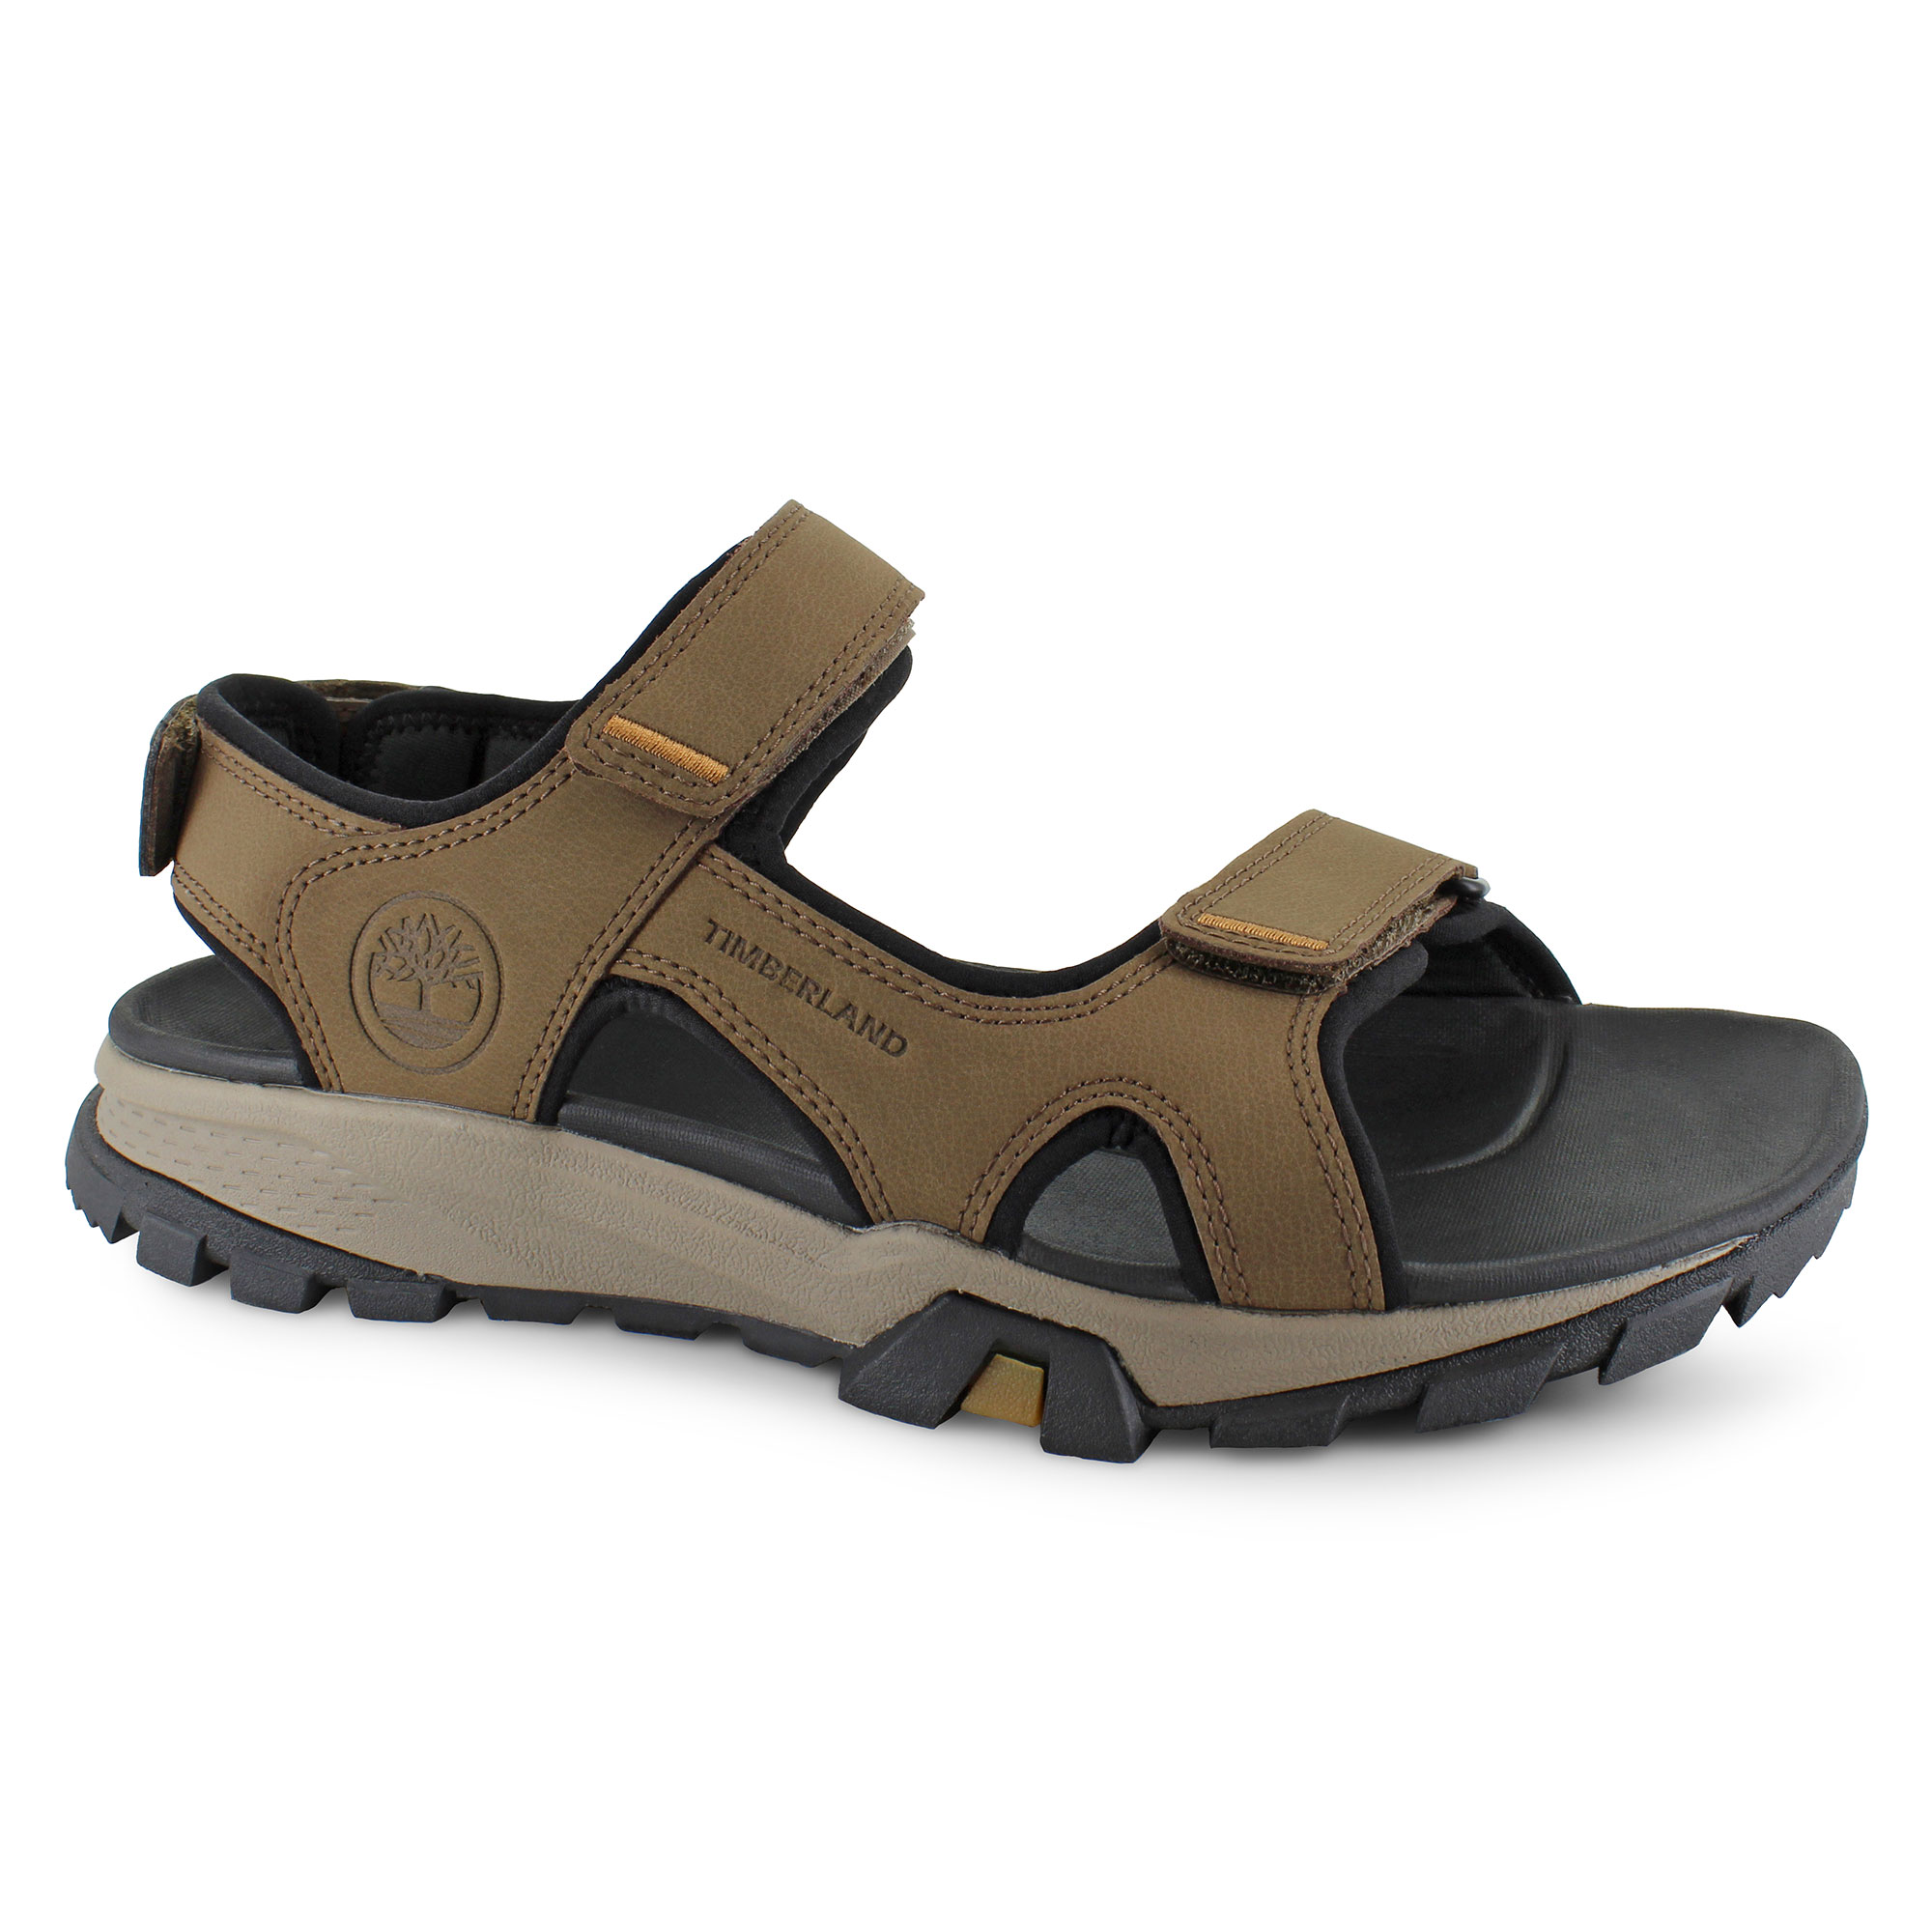 Men's Outdoor/Sport Sandals | Shop Now at SHOE DEPT. ENCORE